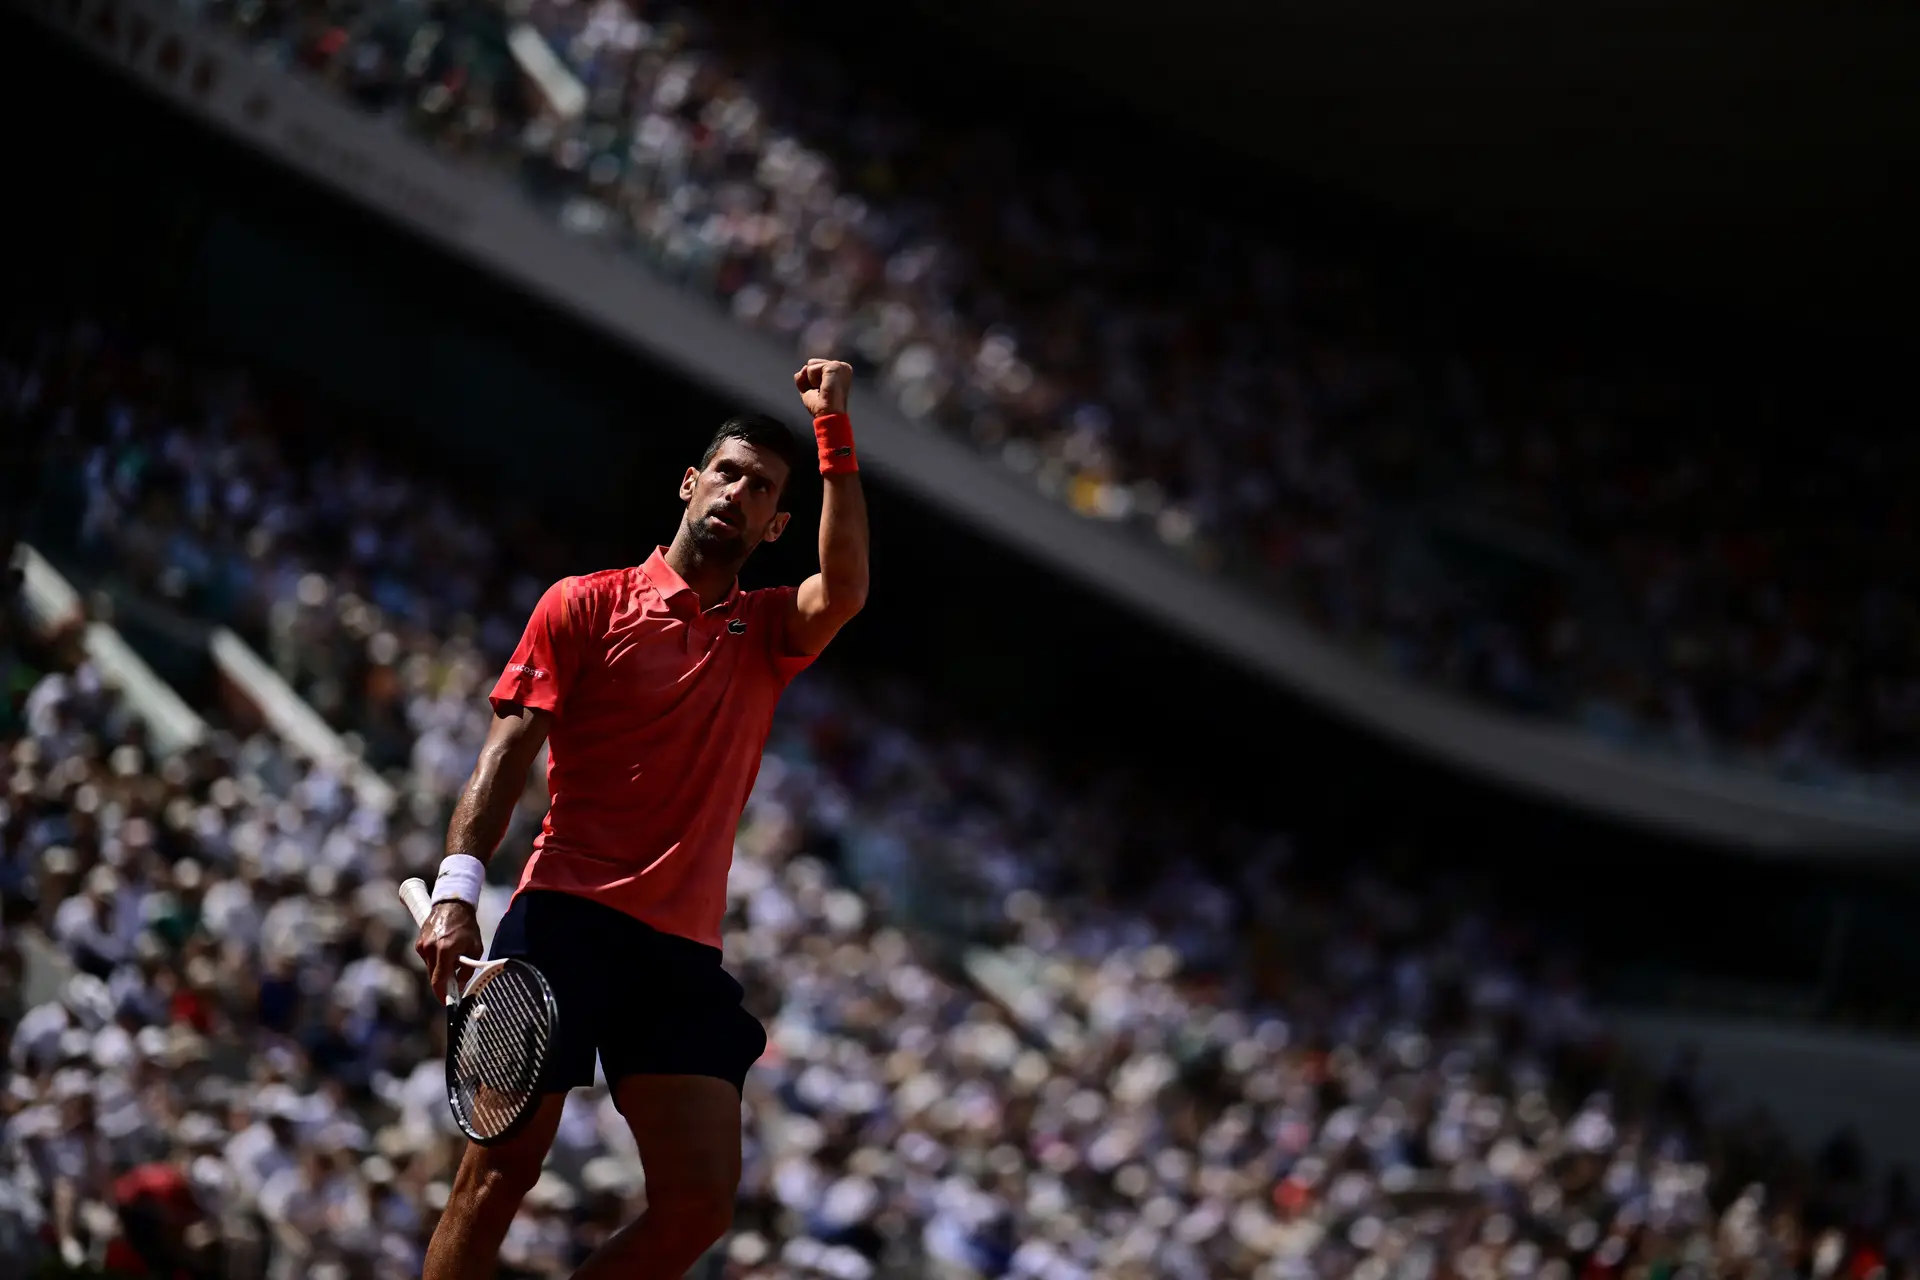 Jogo mais longo do tênis durou duas vezes mais do que a batalha entre  Djokovic e Federer - Estadão